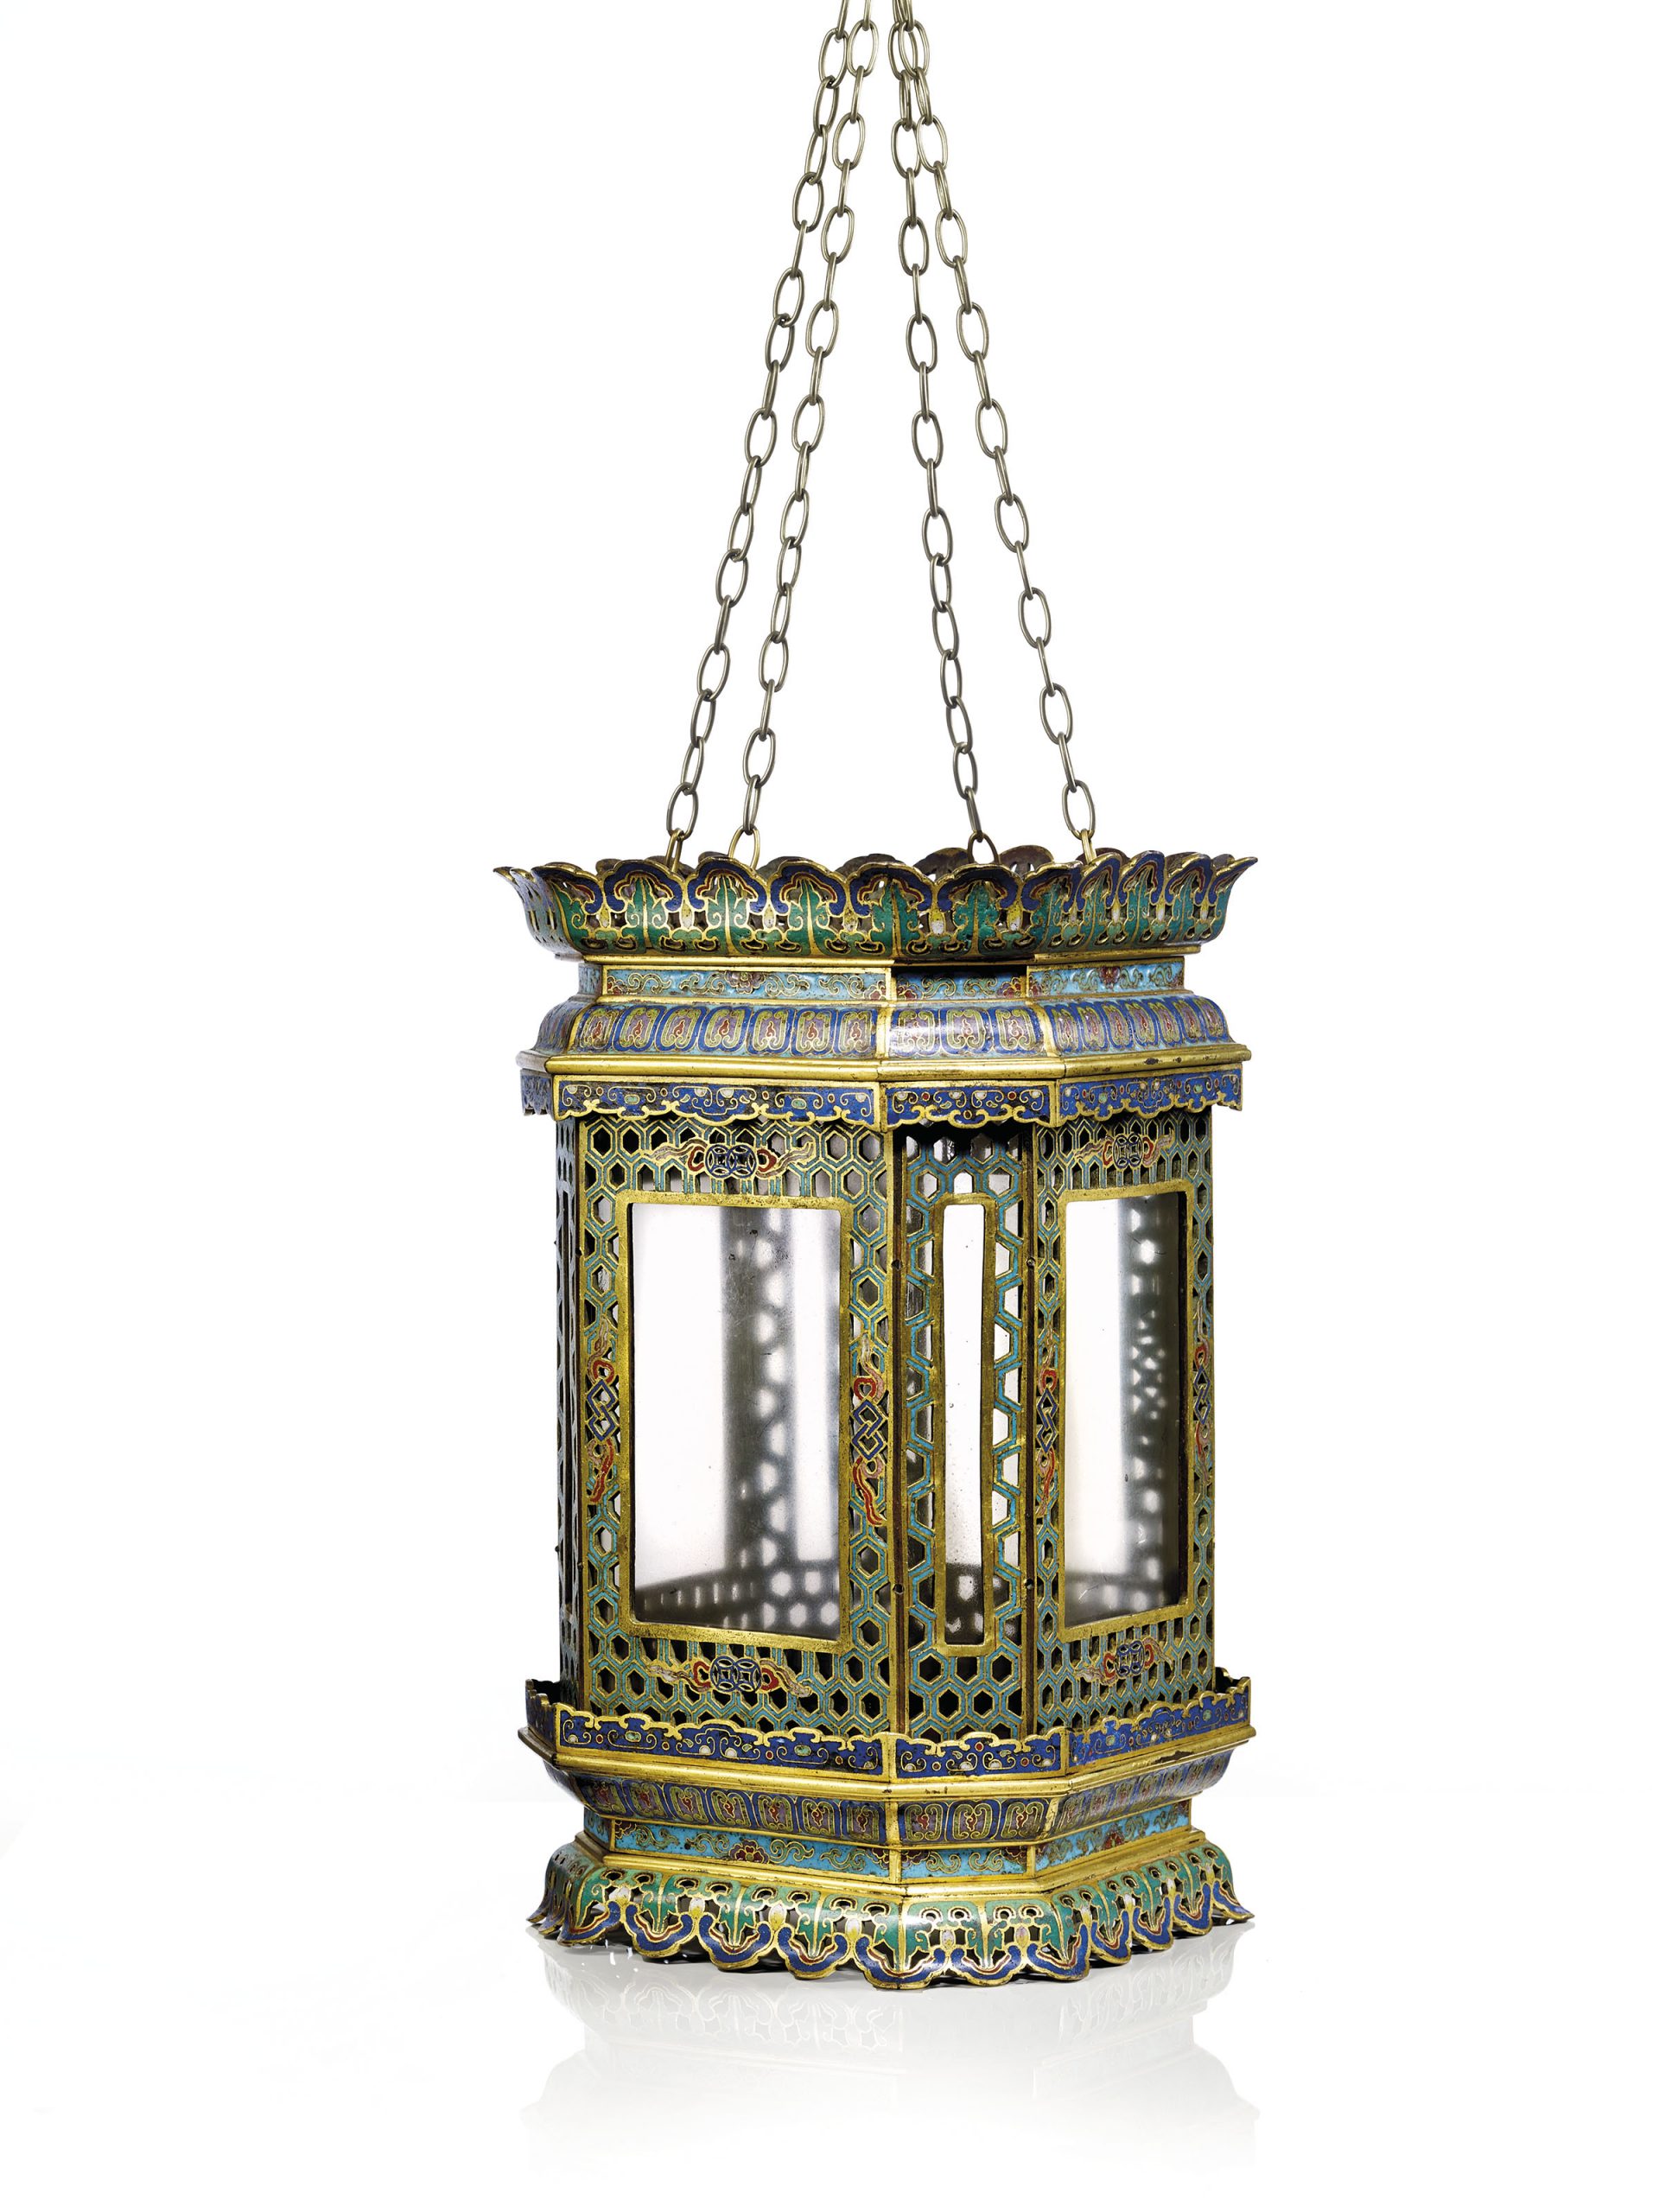  清十八世紀 掐絲琺瑯蓮紋宮燈